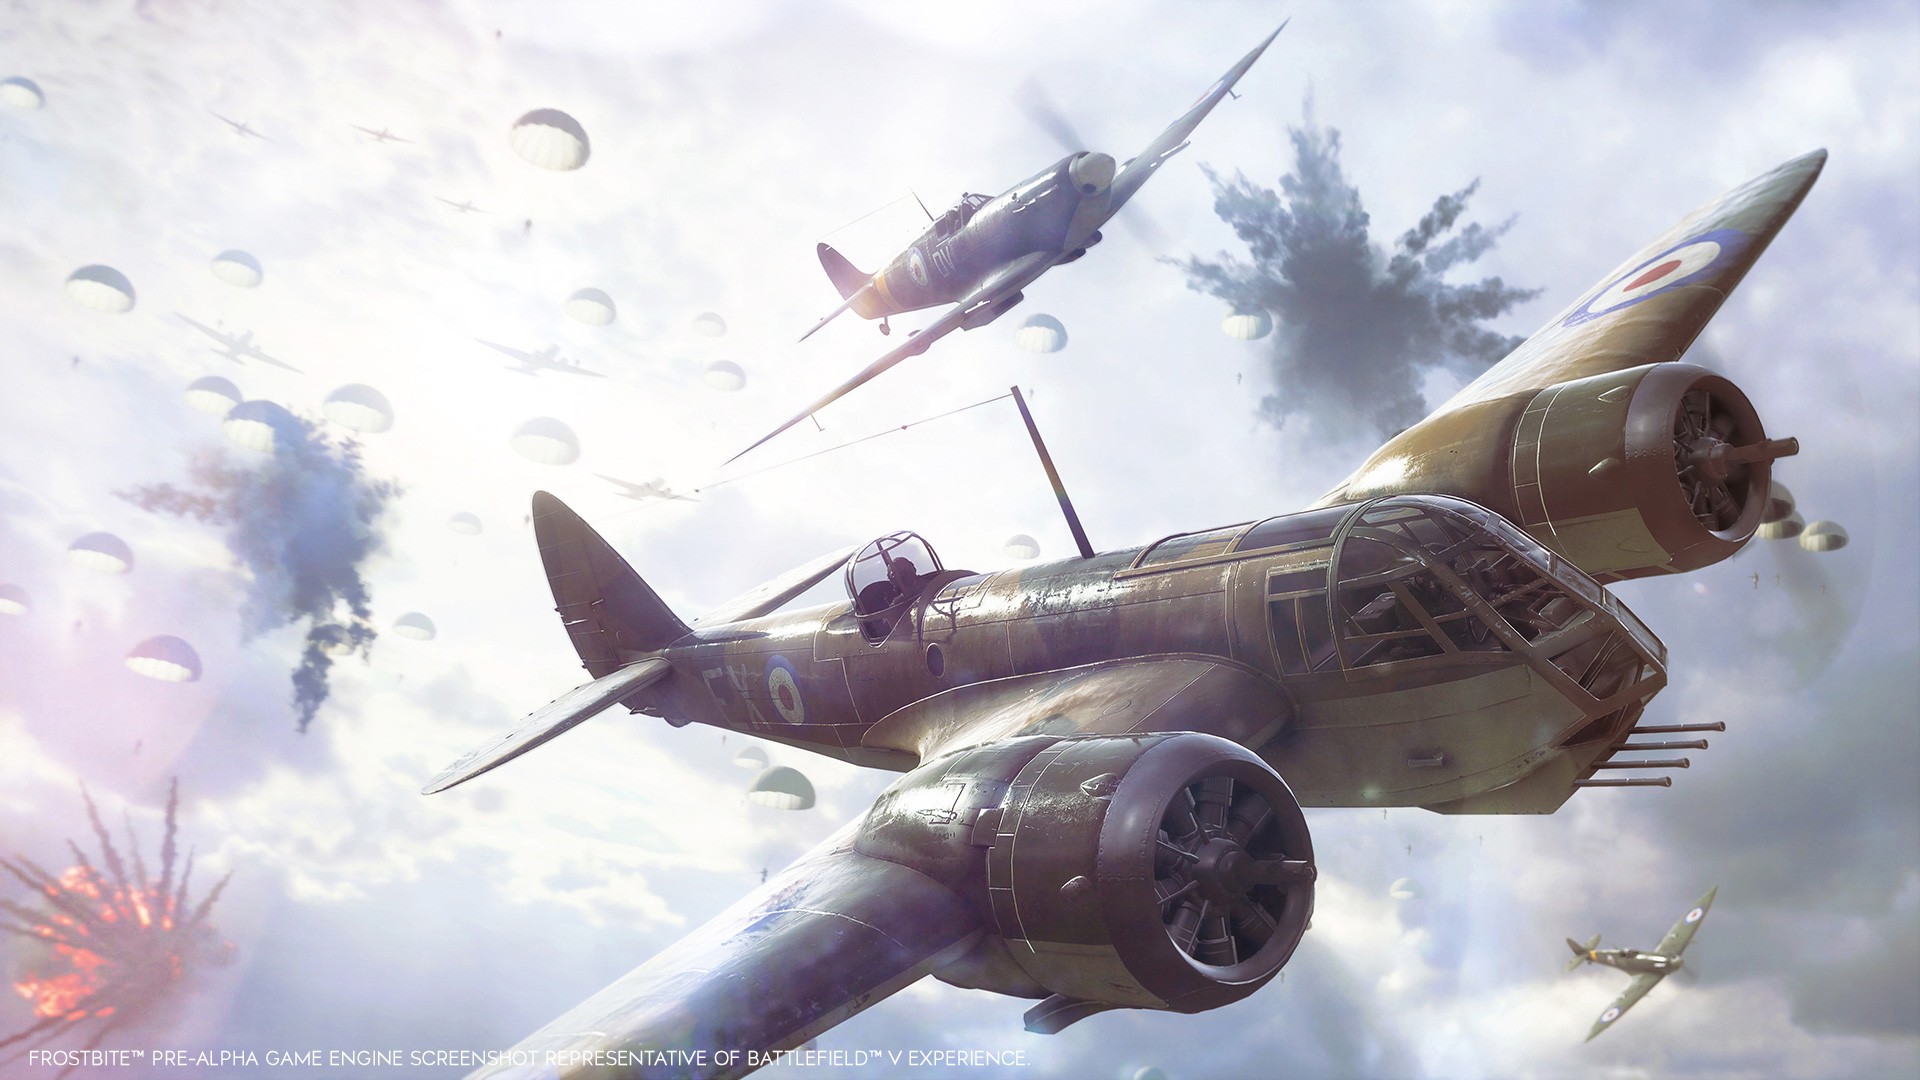 Chế độ chơi mới 'Airborne' của Battlefied V sẽ cho phép người chơi nhảy dù xuống trận chiến nảy lửa